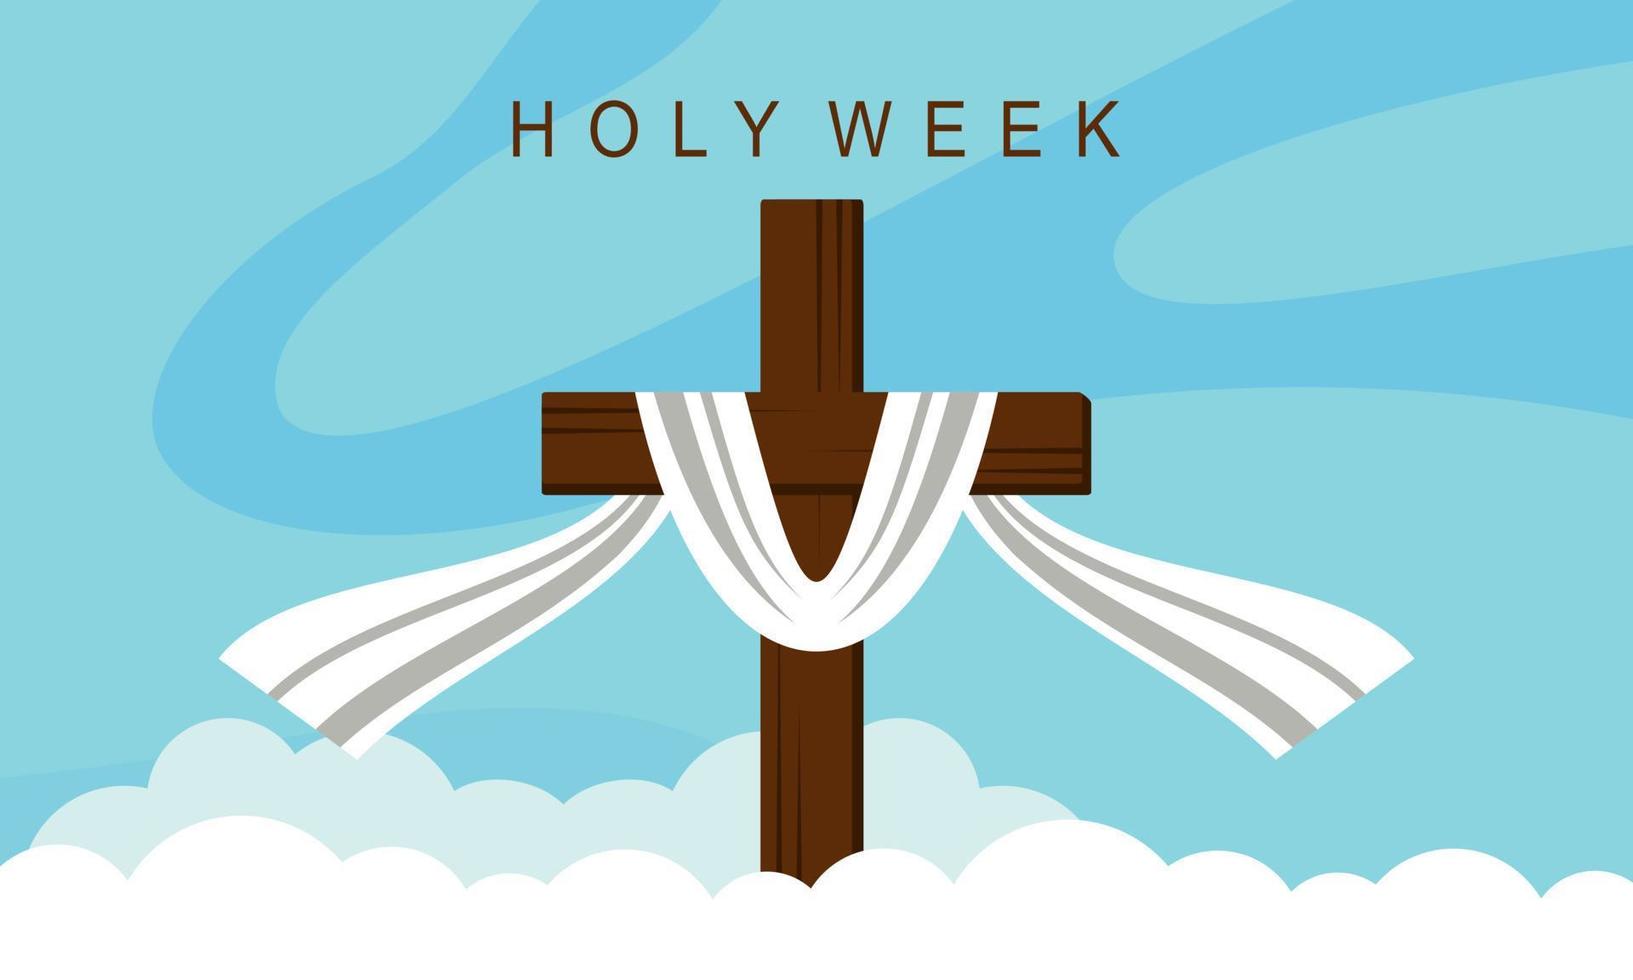 platte ontwerp heilige week concept logo vector